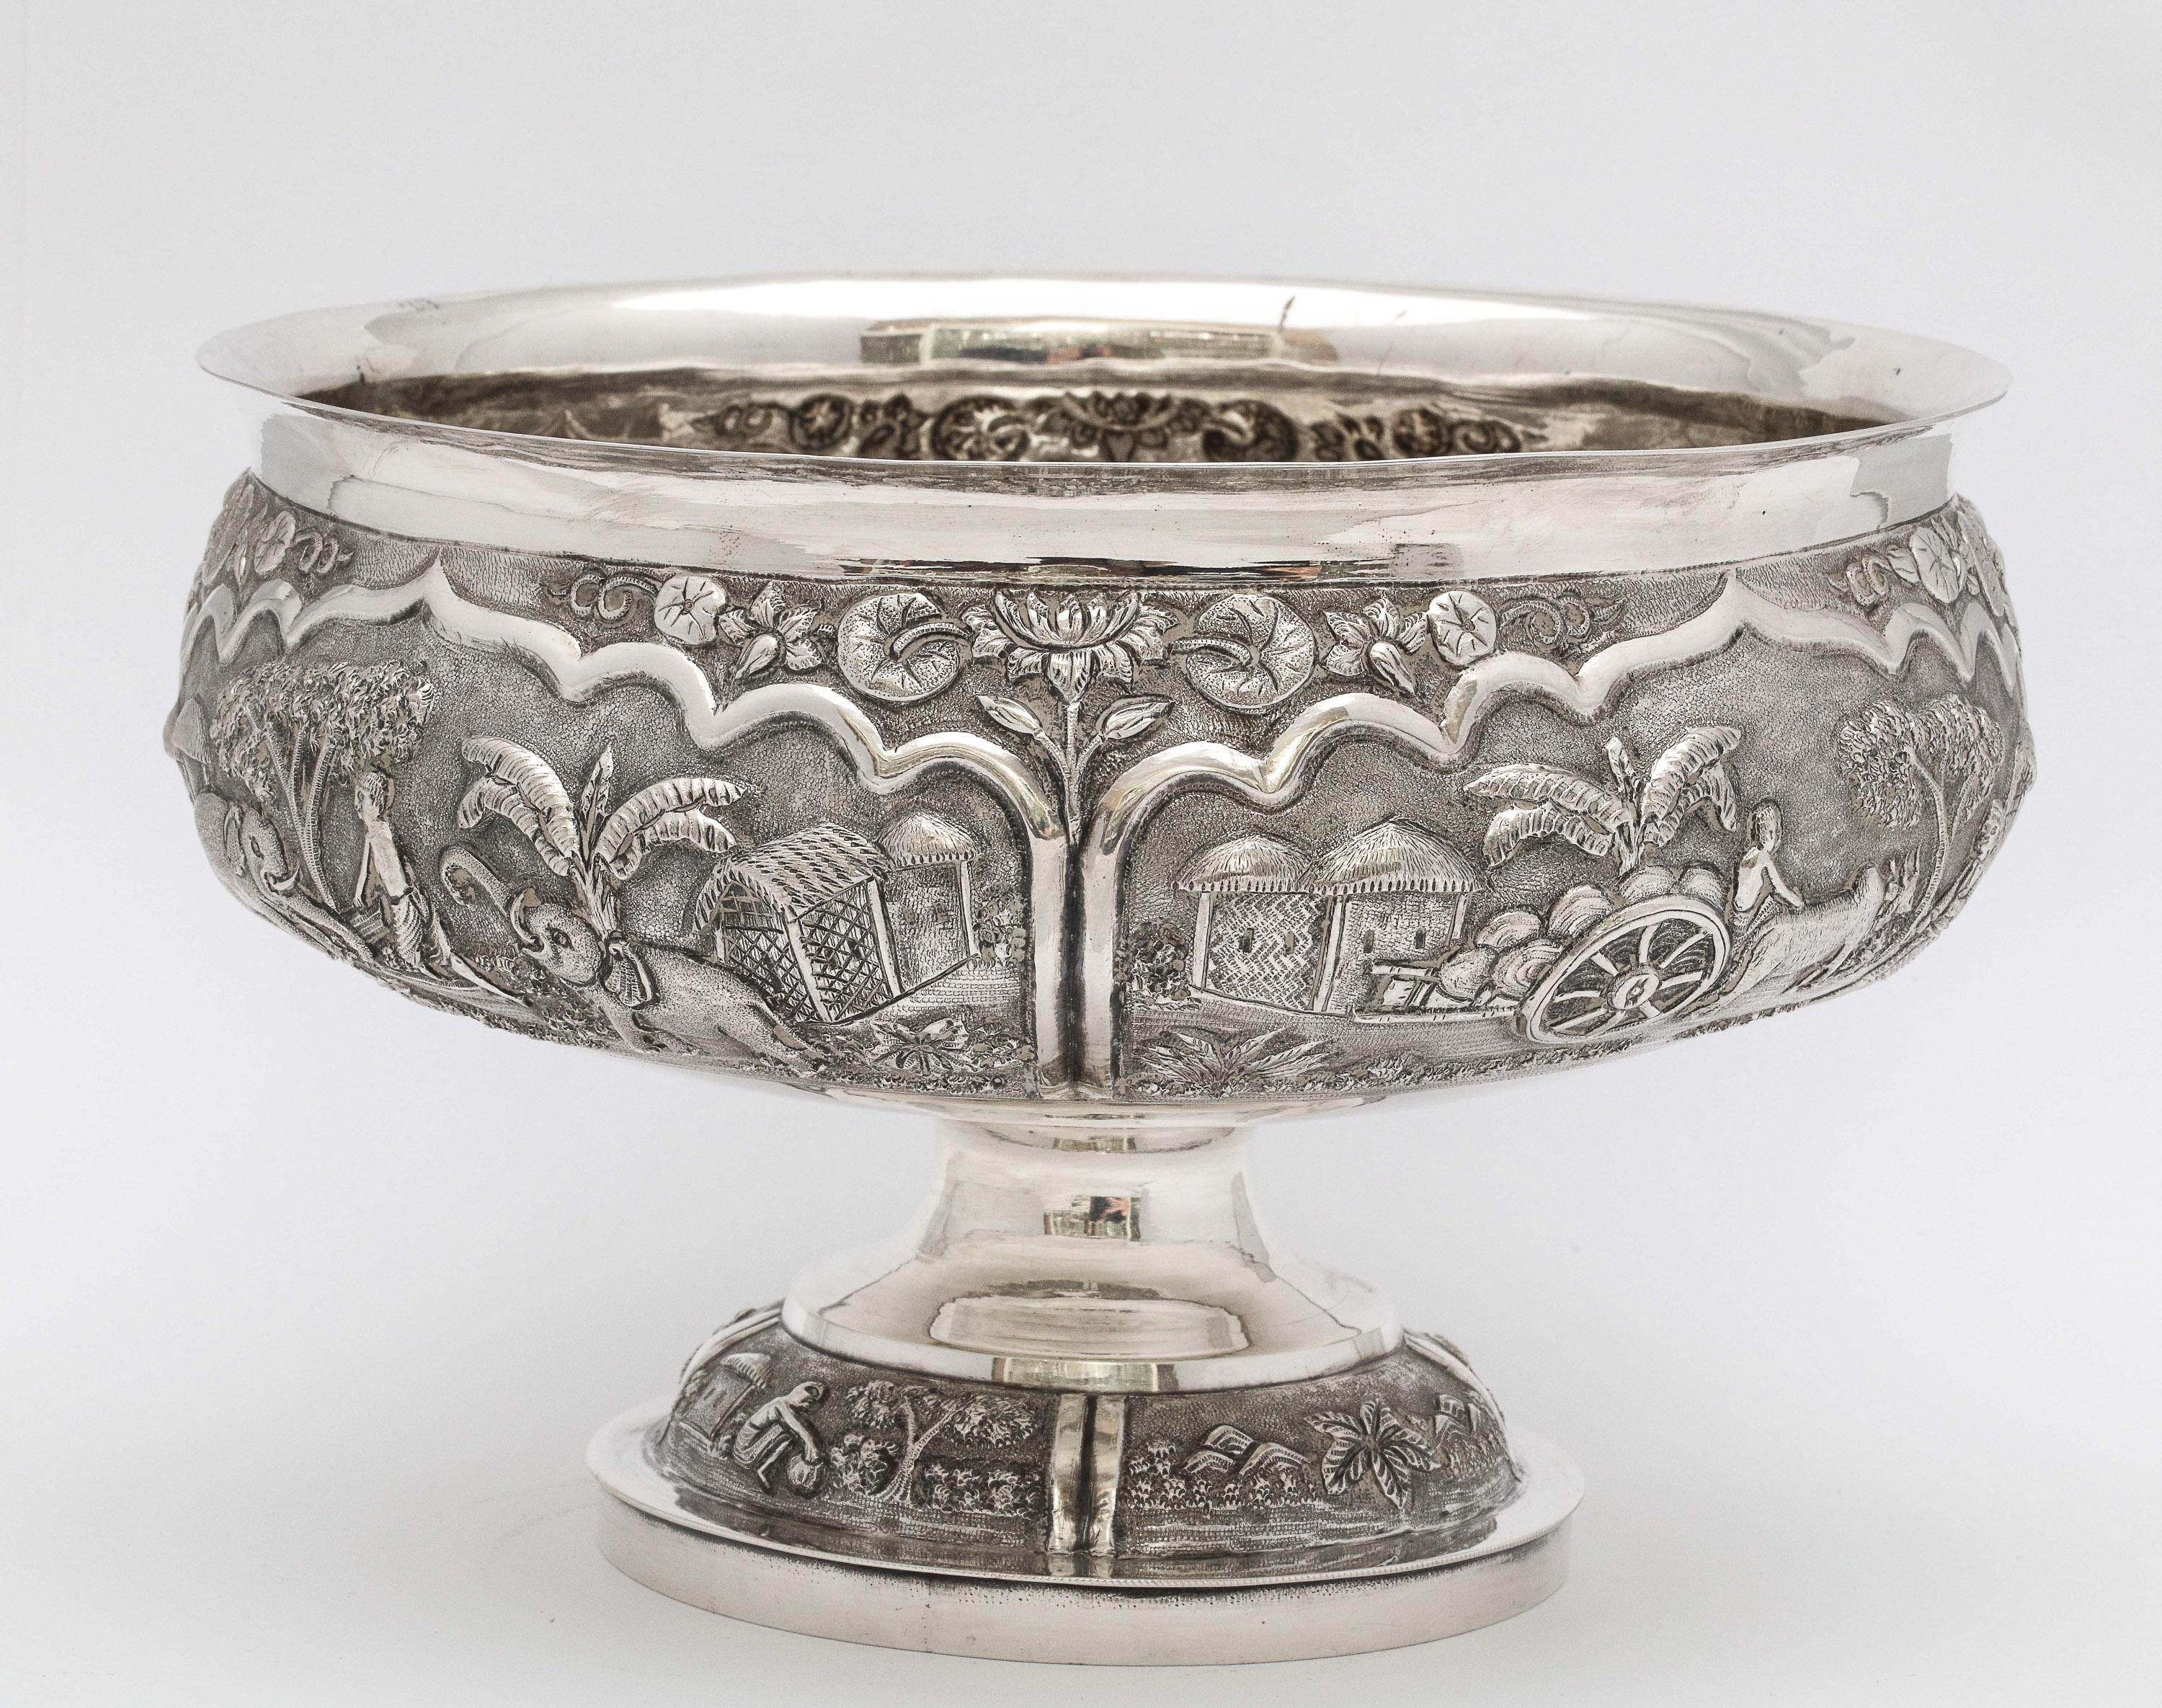 Repoussé Late 19th Century Burmese/Myanmar Silver Pedestal-Based Bowl